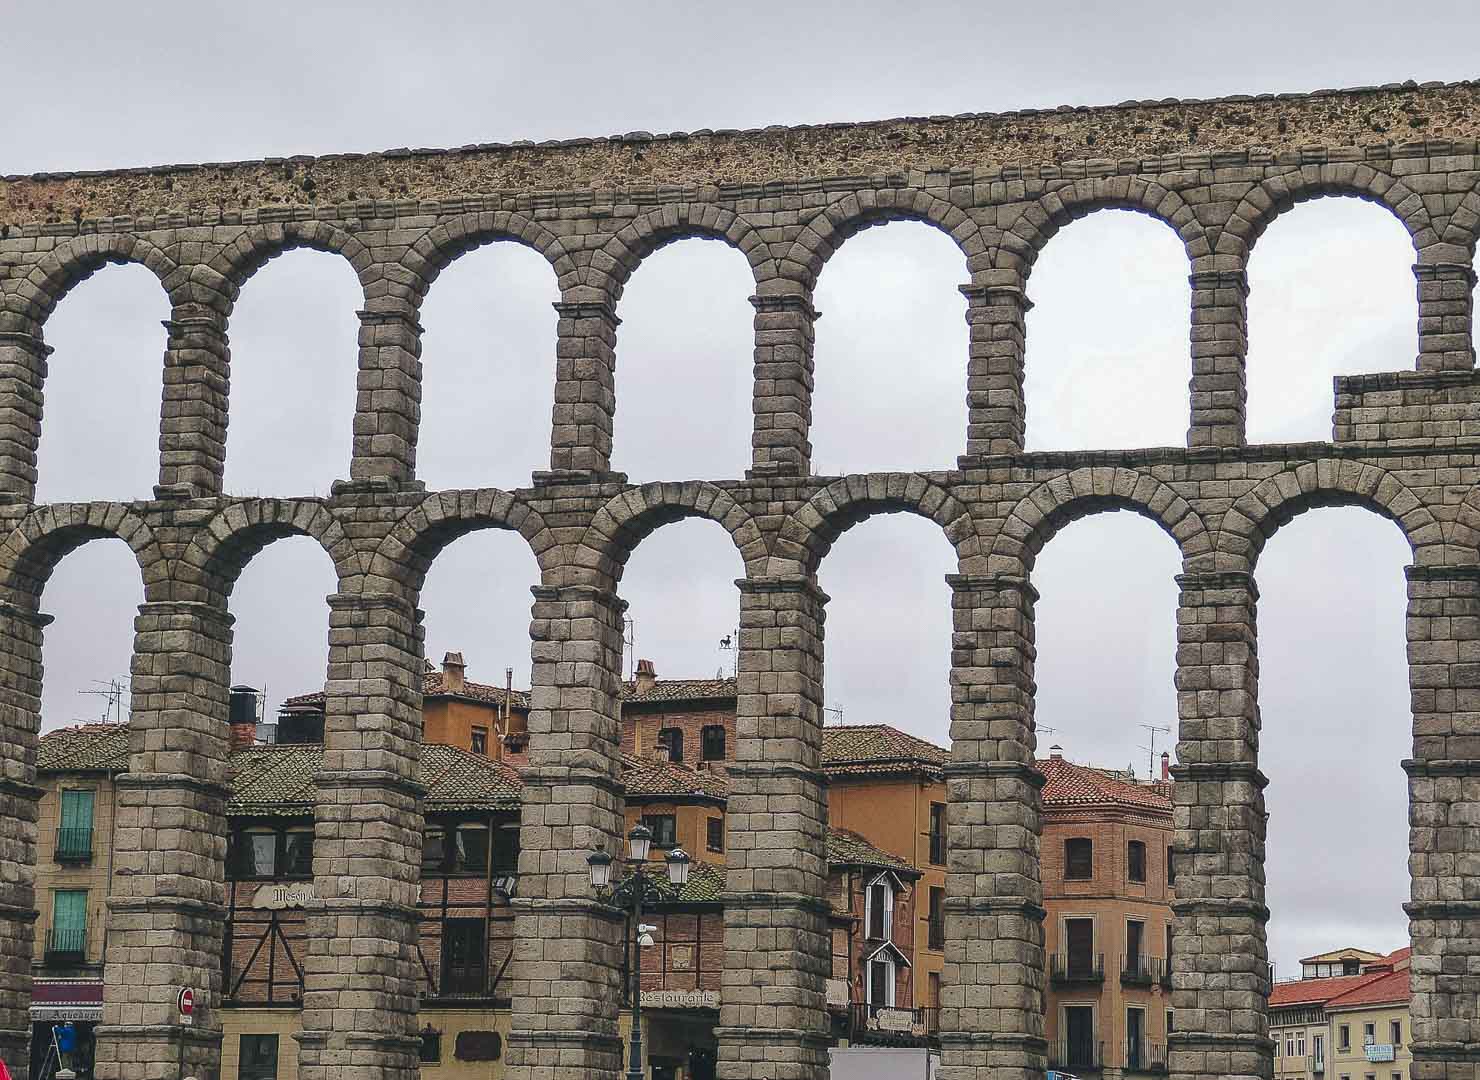 acueducto de segovia roman aqueduct in segovia spain